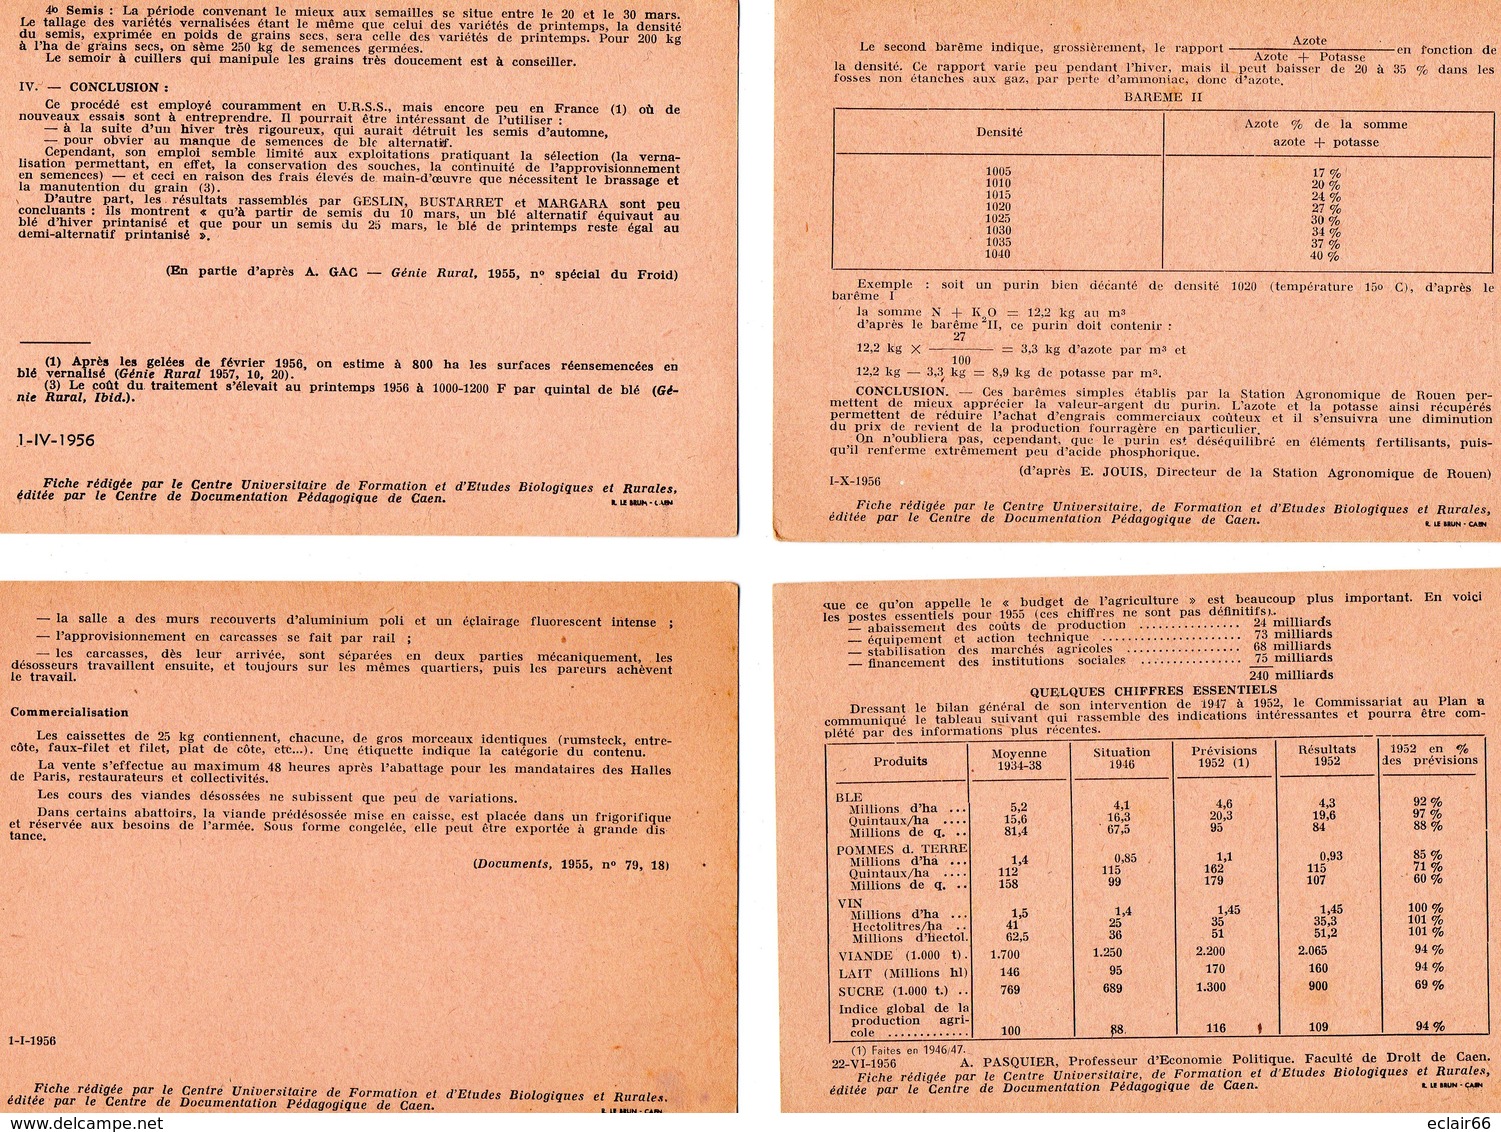 26 Fiches MINISTERE EDUCATION NATIONAL  centre de documentation pédagogique  de Caen année 1956- 1957 Impeccable scannes